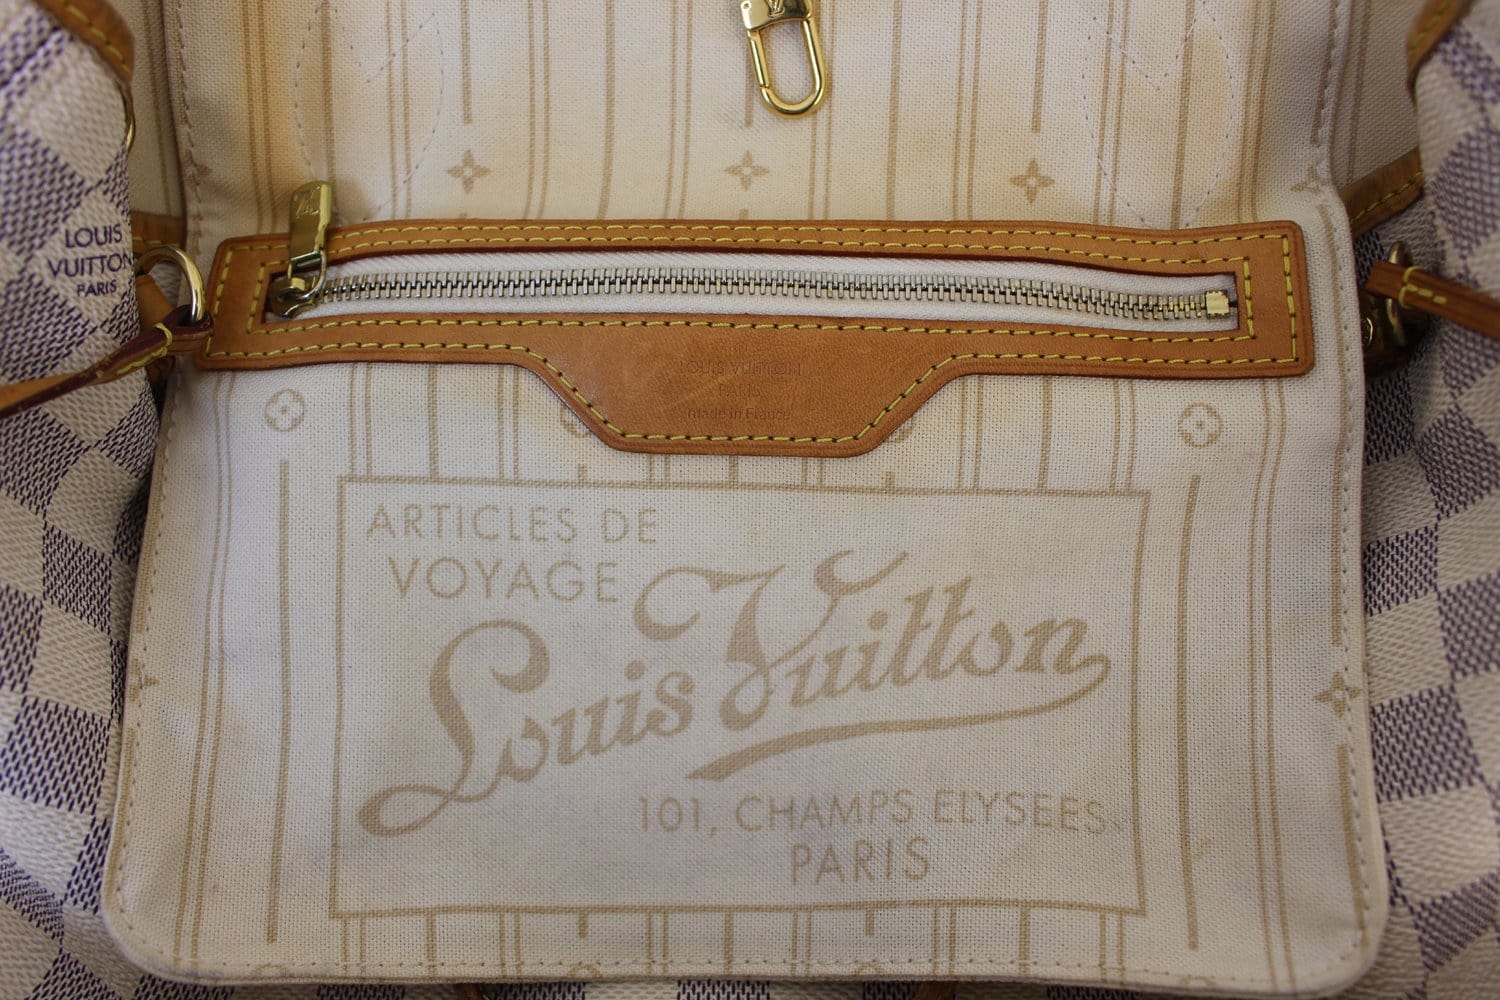 Authentic LOUIS VUITTON Neverfull PM Damier Azur Tote Bag Purse #49198